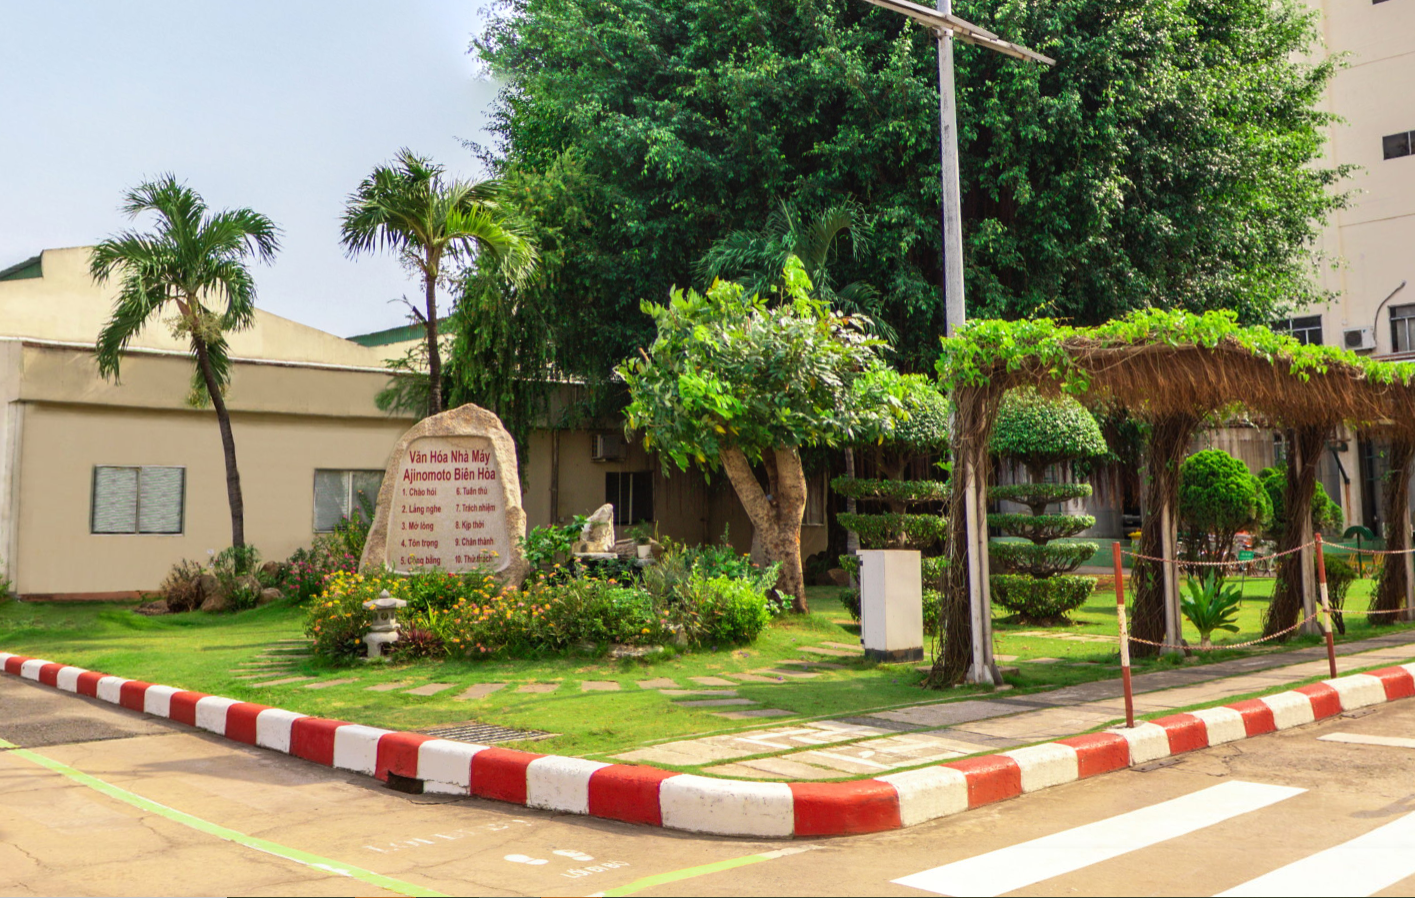 Một góc khuôn viên xanh mát tại nhà máy Ajinomoto Biên Hòa